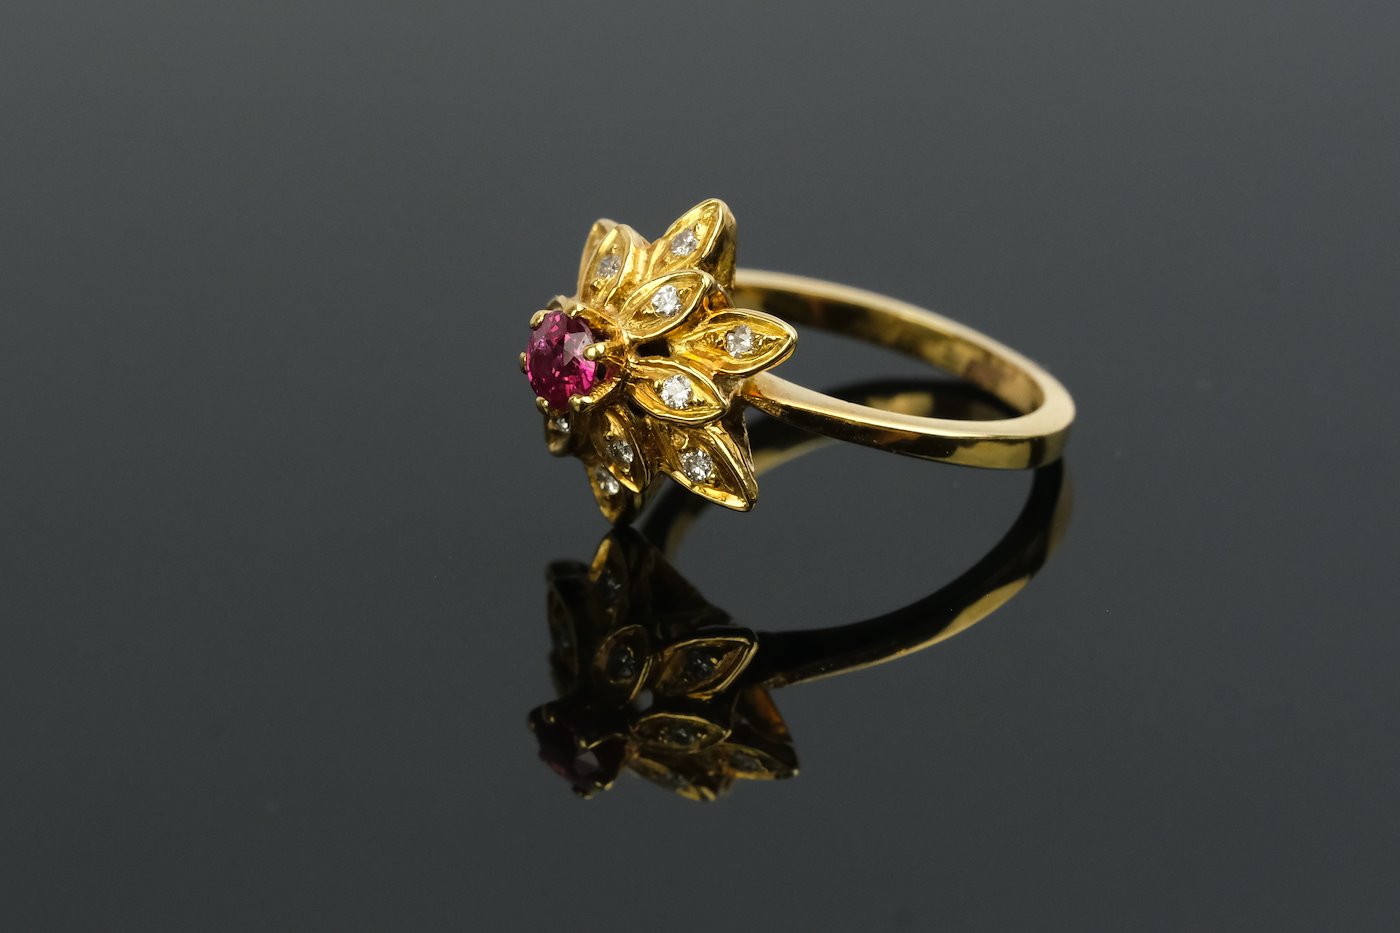 .. - Prsten s rubínem 0,06 ct a diamanty, zlato 750/1000, značeno platnou puncovní značkou "kohout", hrubá hmotnost 4,70 g